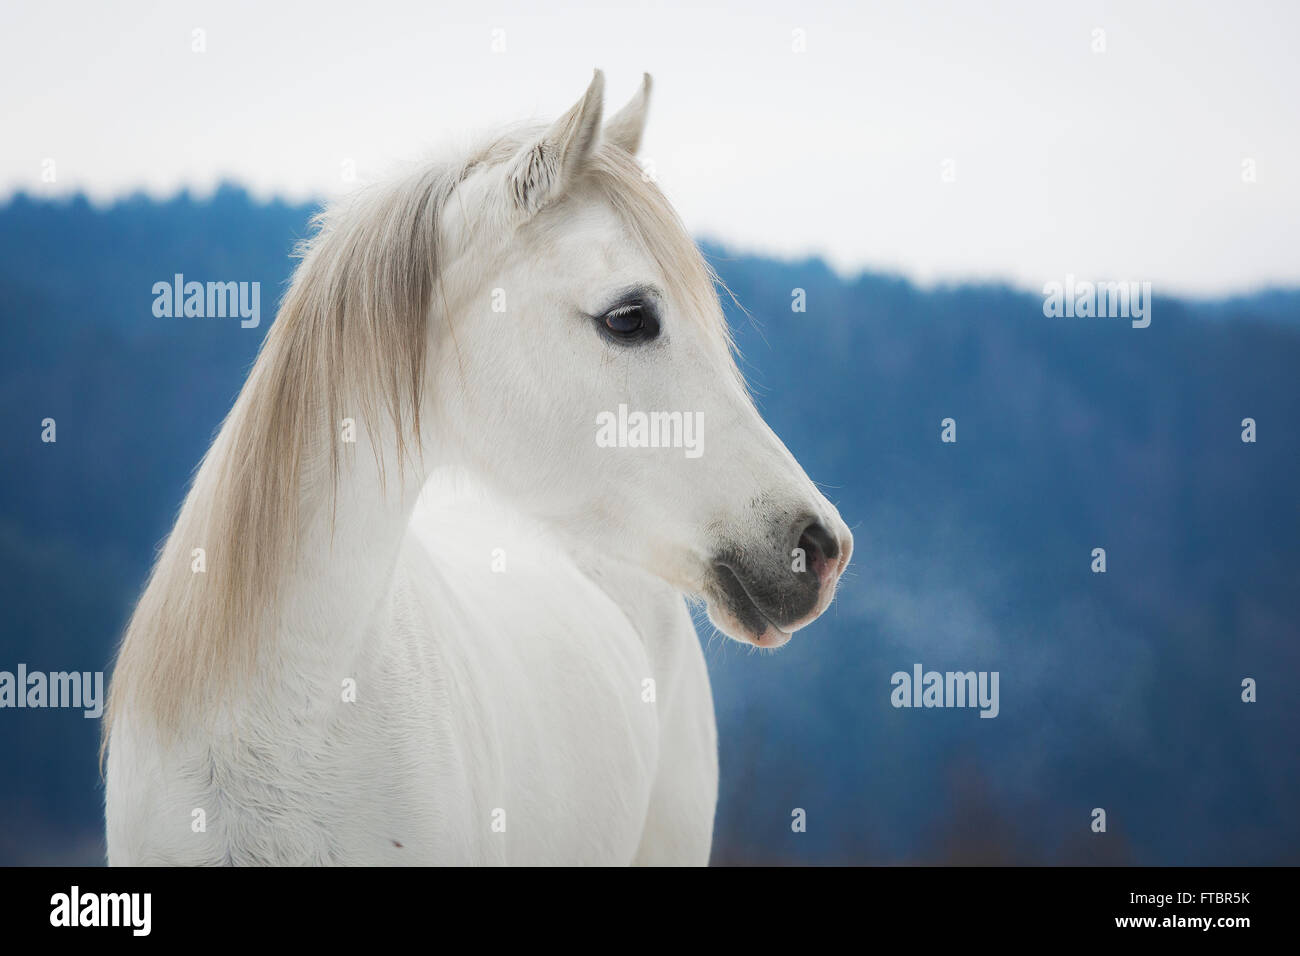 Purebred Arabian mare, Gray color in winter, portrait, Austria Stock Photo